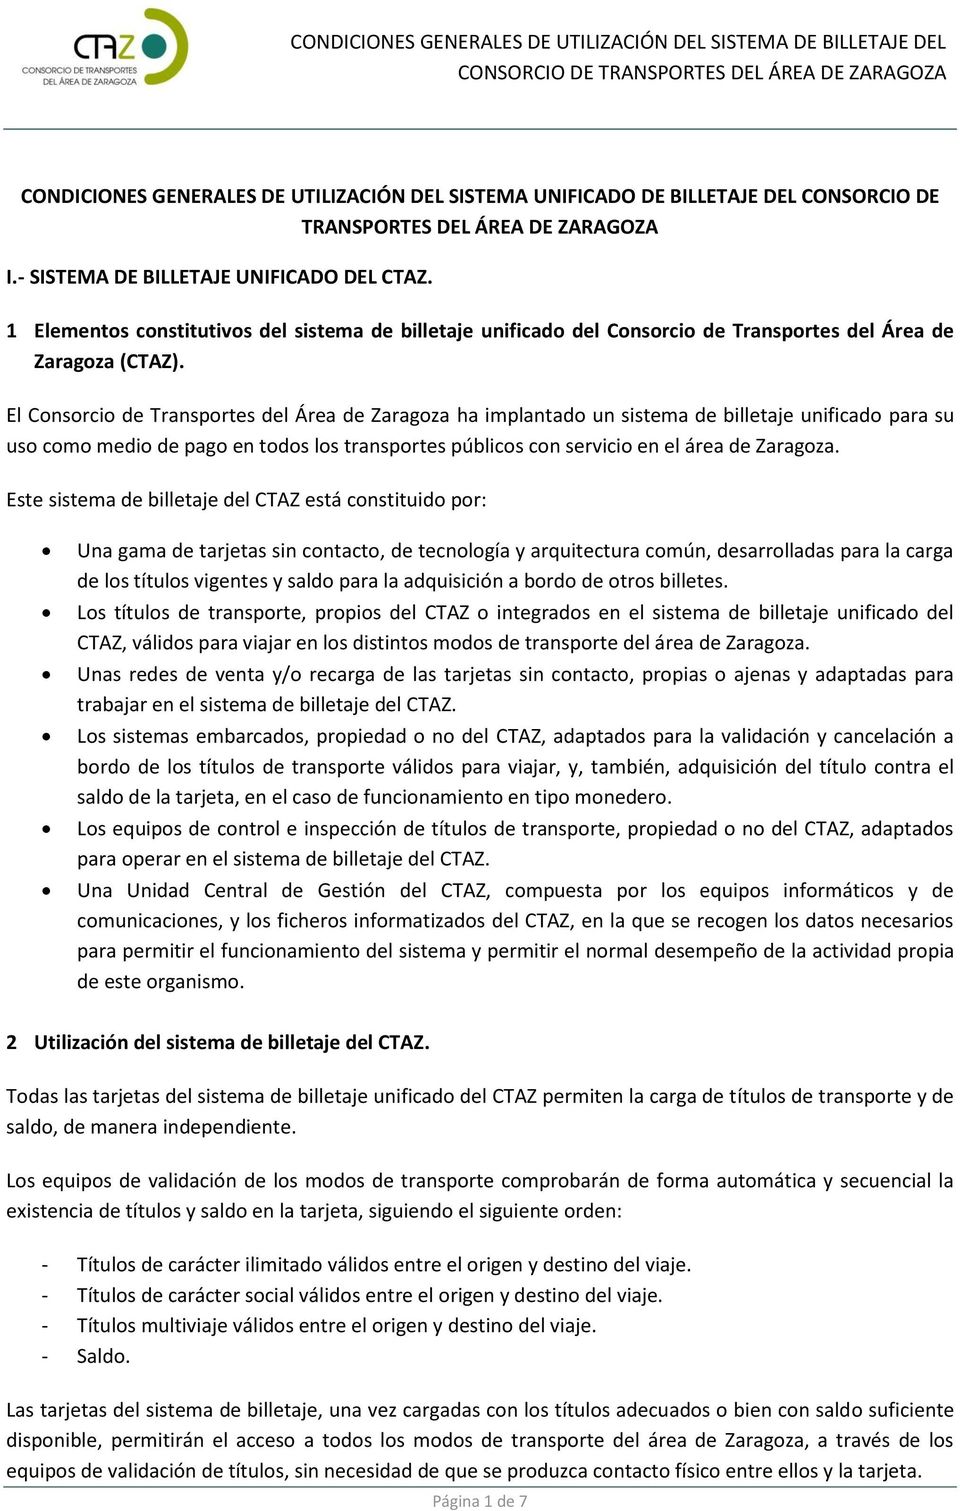 El Consorcio de Transportes del Área de Zaragoza ha implantado un sistema de billetaje unificado para su uso como medio de pago en todos los transportes públicos con servicio en el área de Zaragoza.